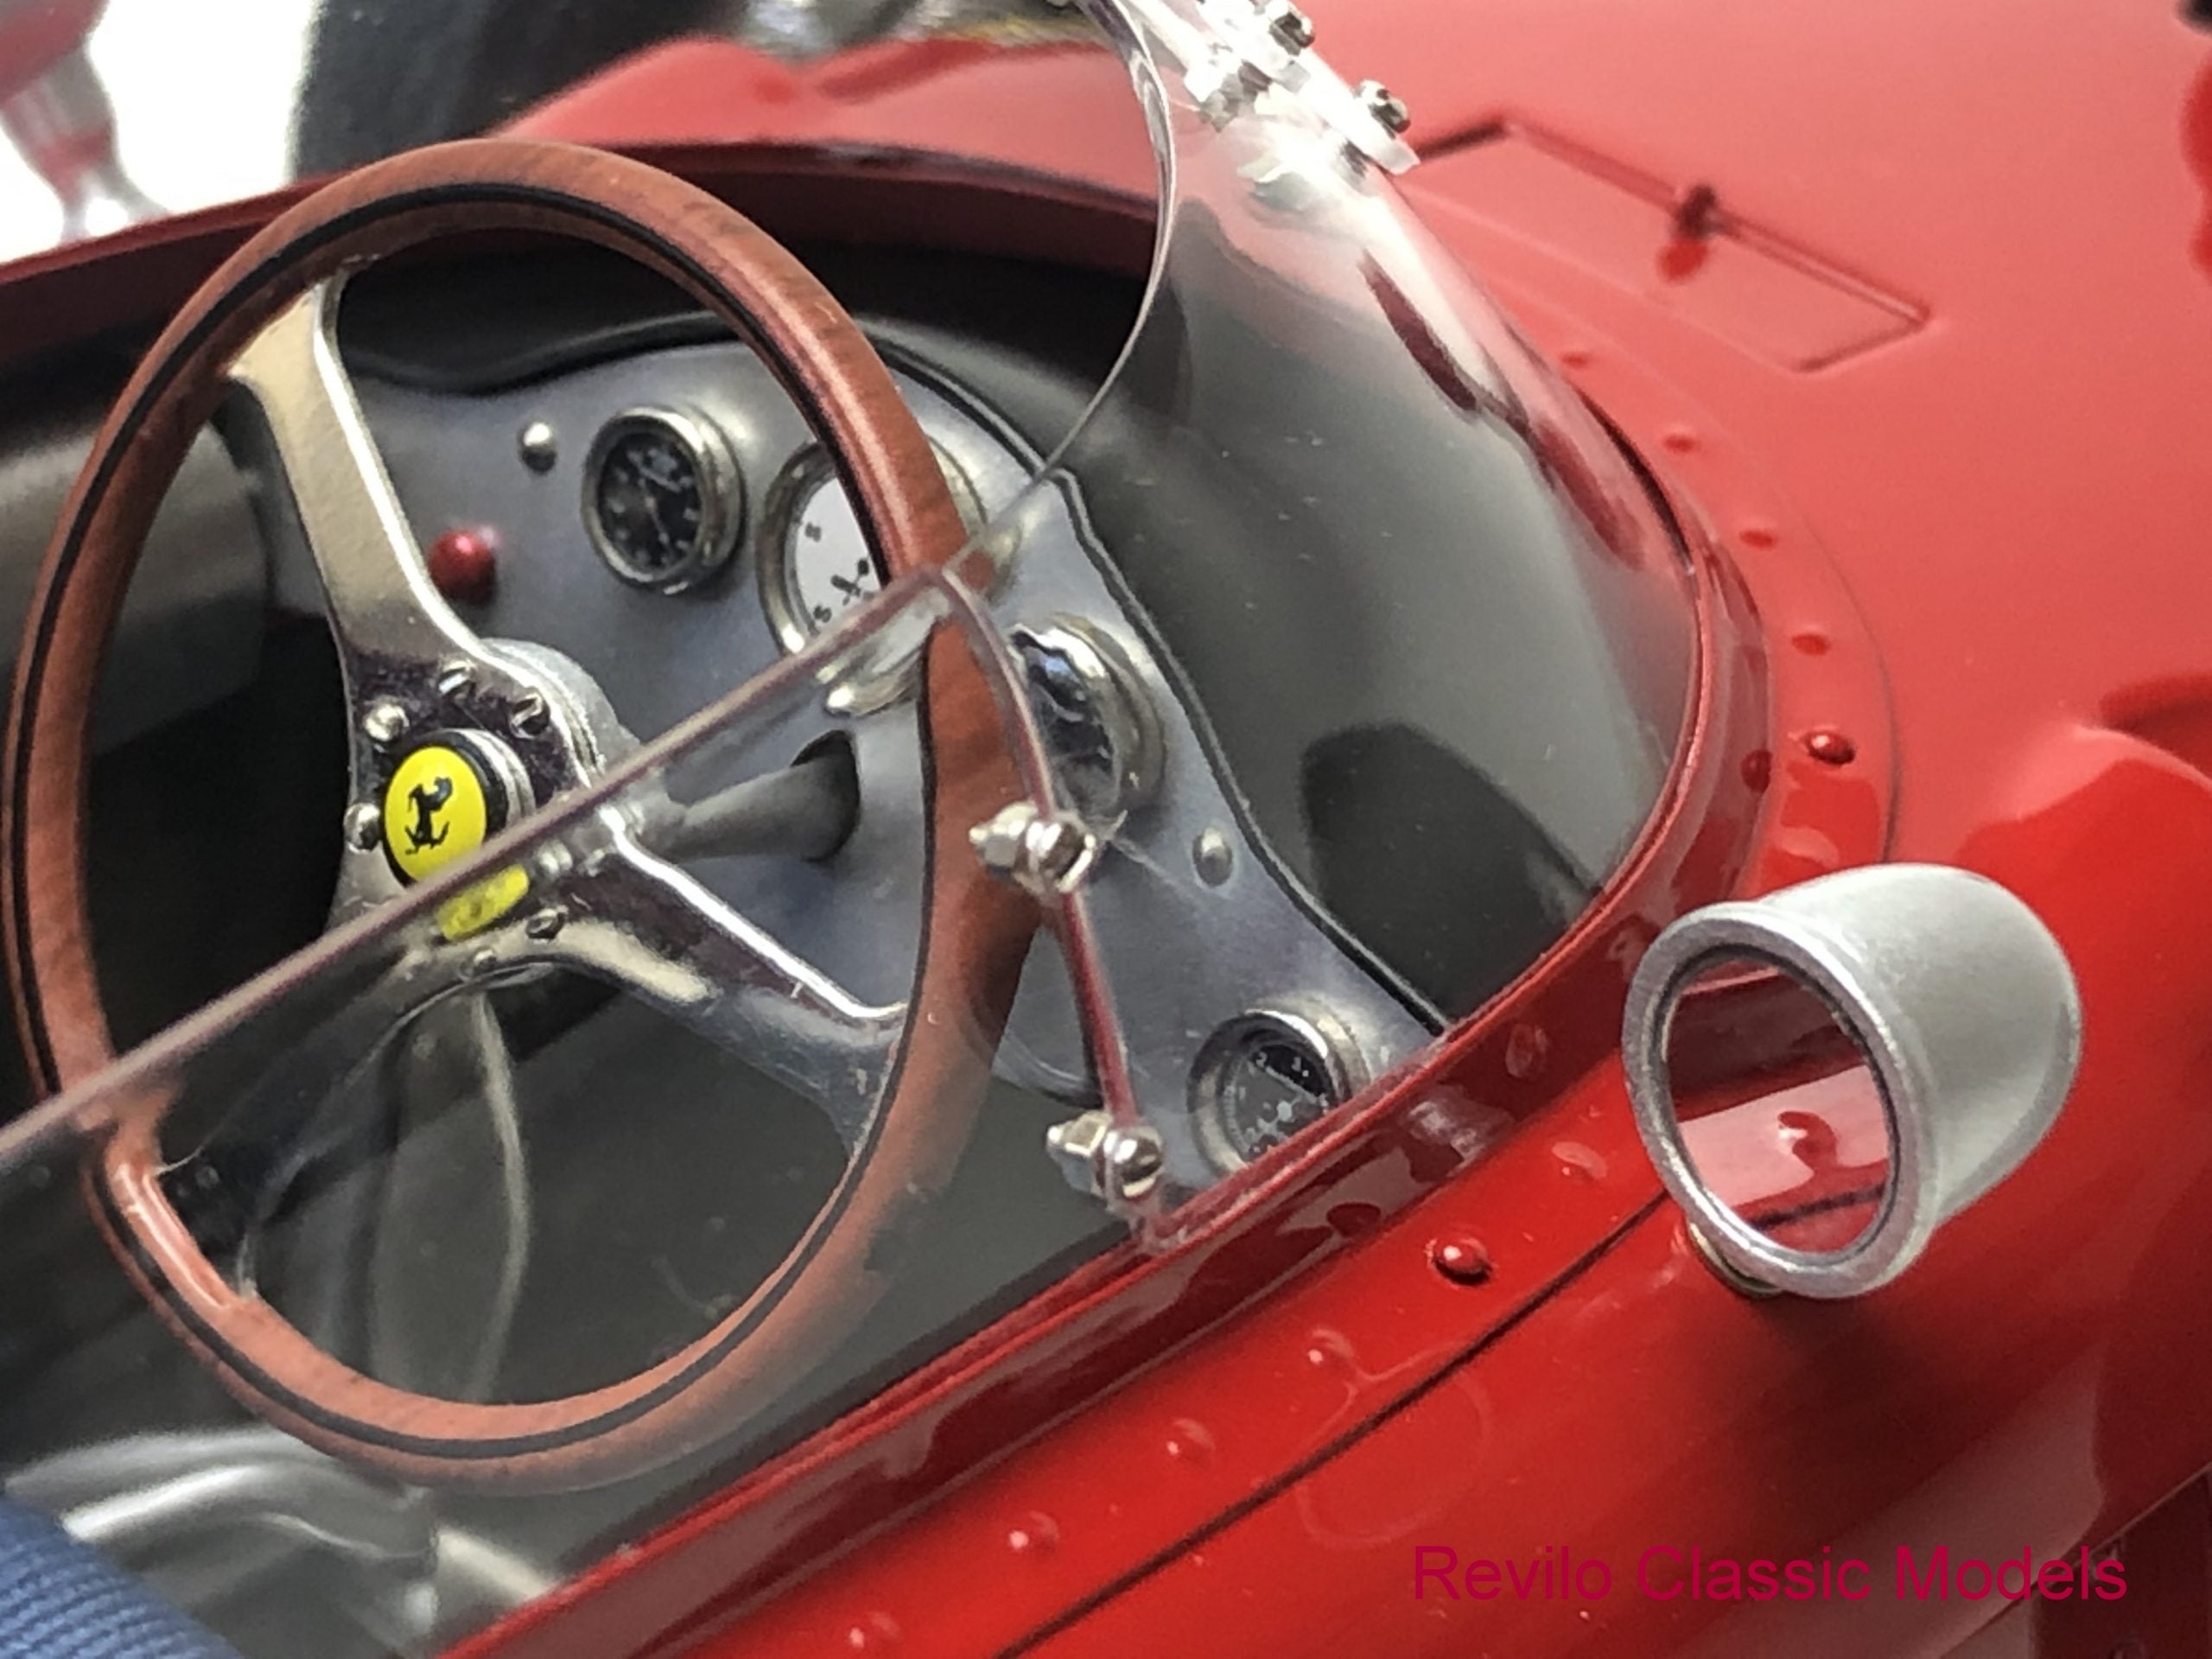 CMC C-007 1961 Ferrari 156 'Sharknose' 1:12 MUY RARO